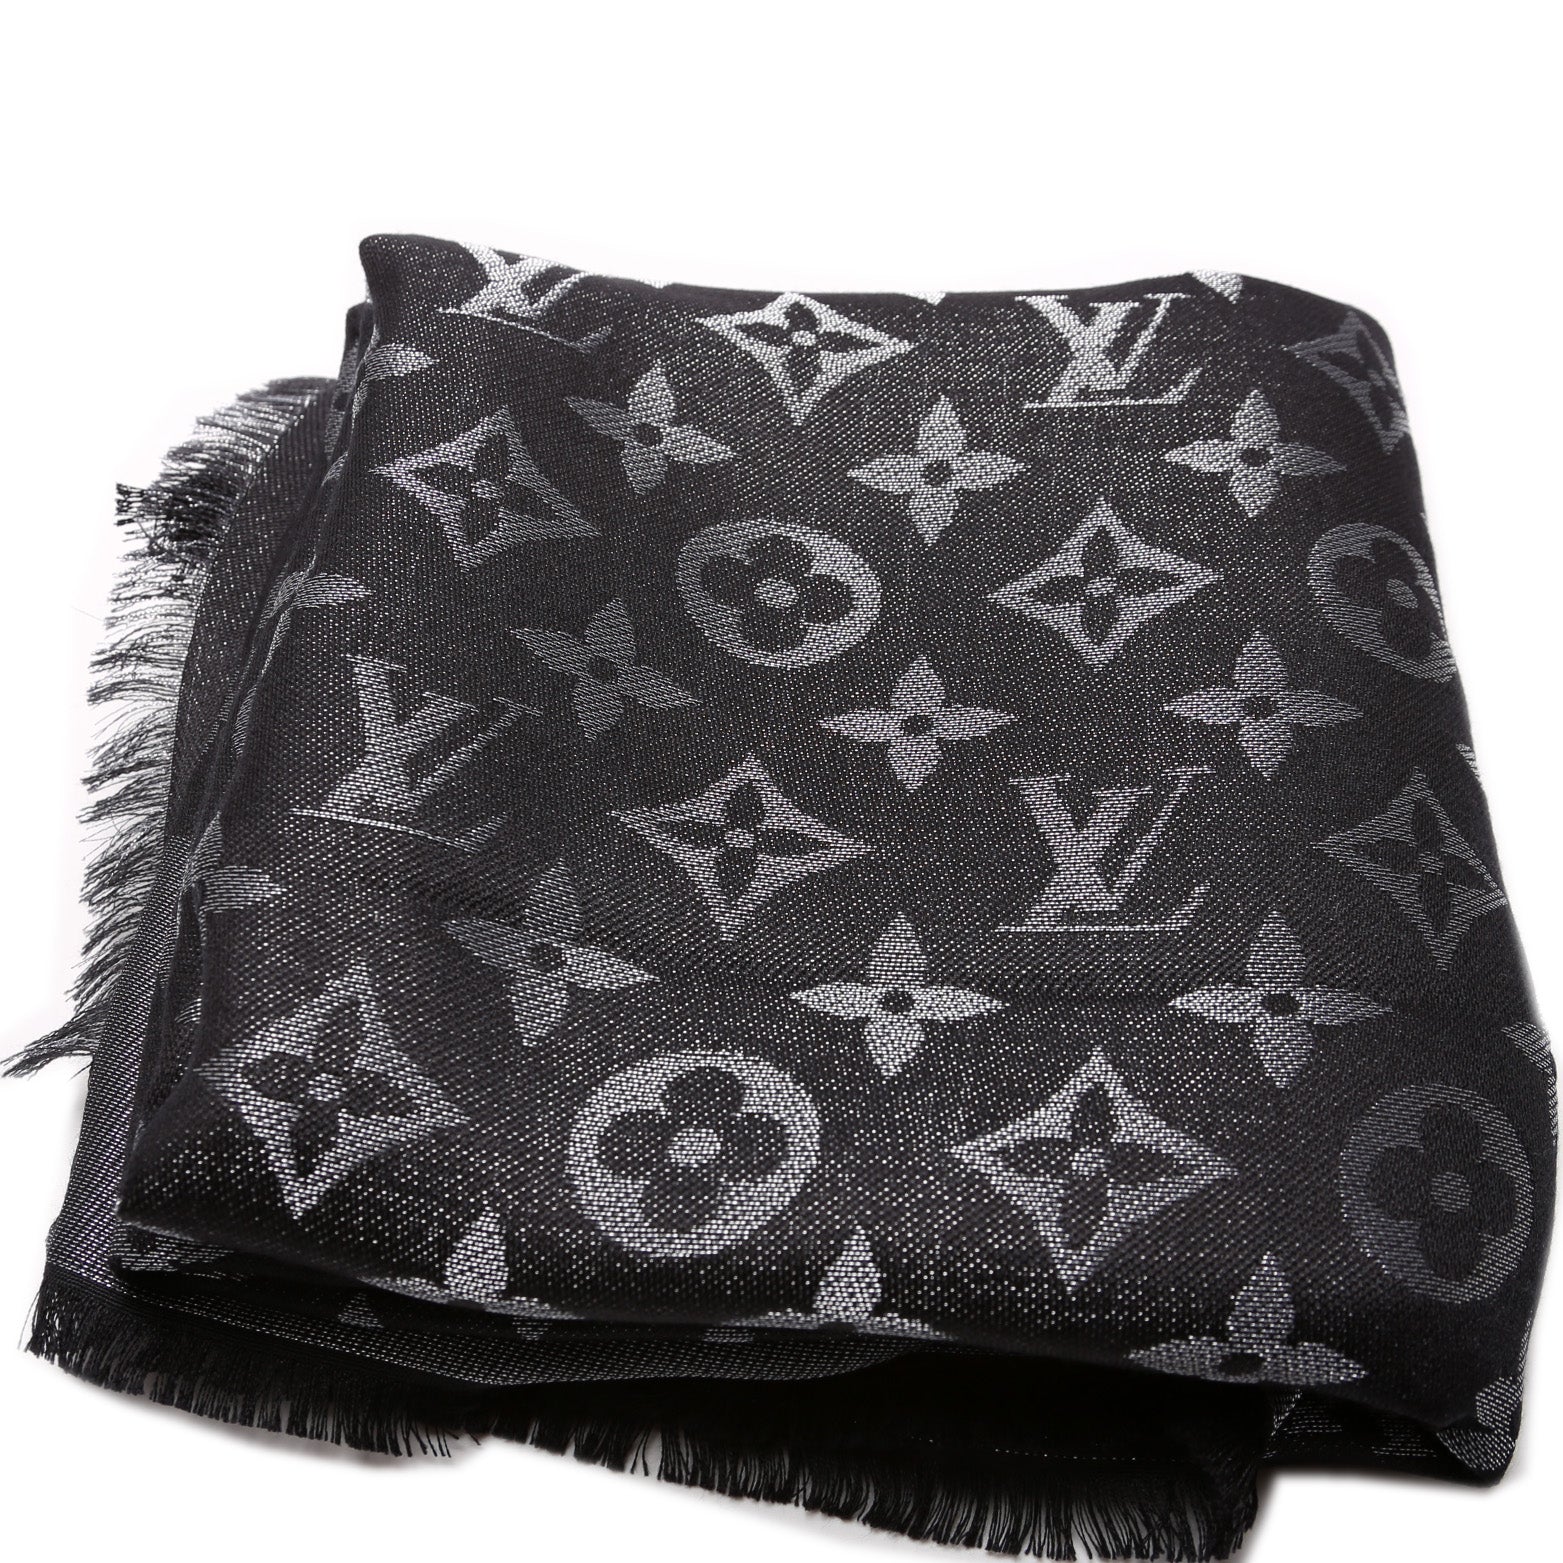 Louis Vuitton Monogram Silk/ Wool Shawl 401910 55